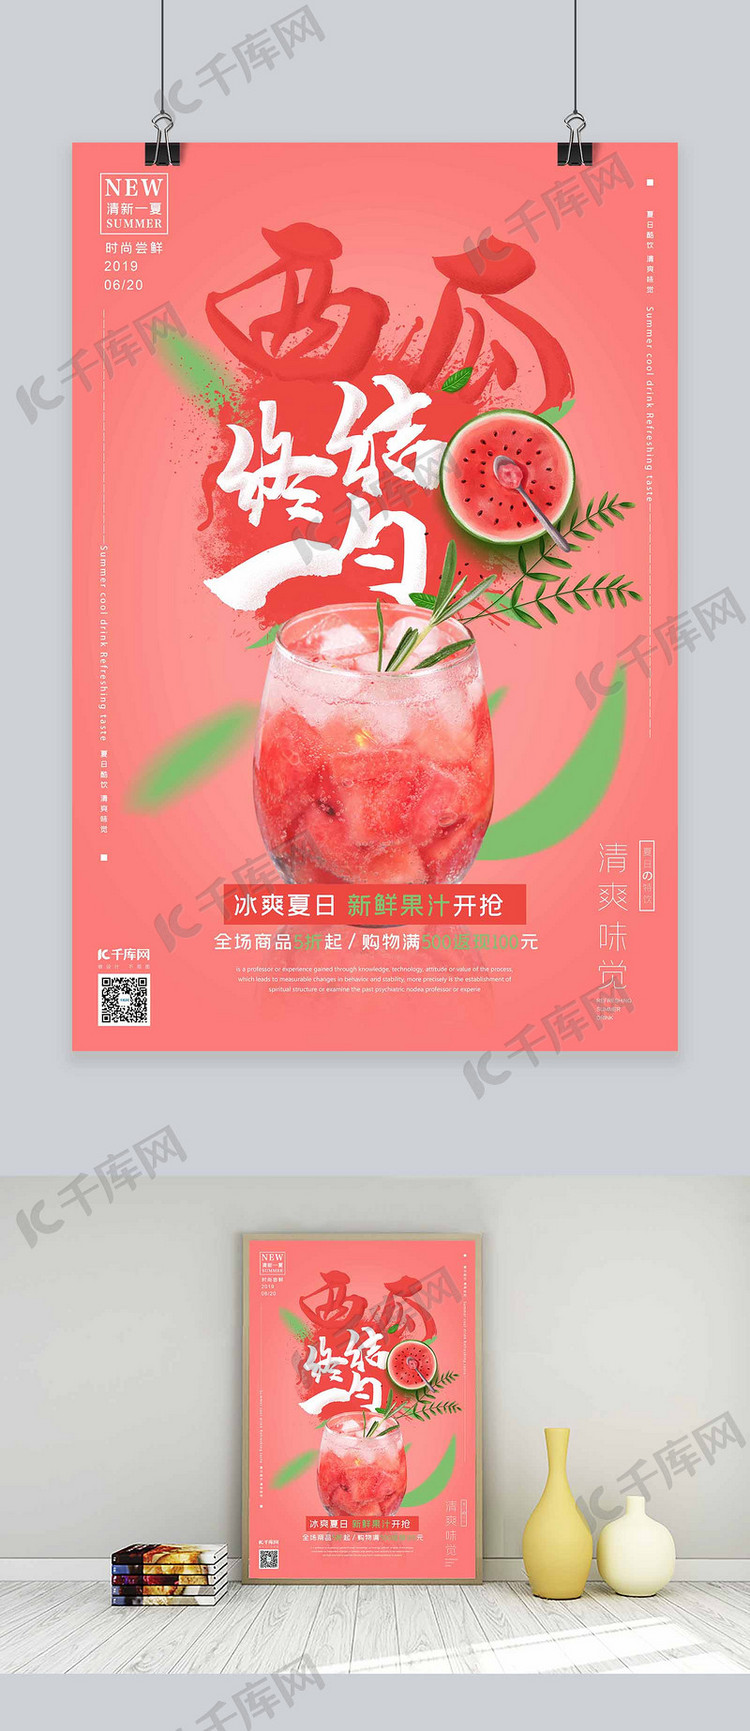 夏日饮料促销西瓜汁西瓜红色简约风格海报